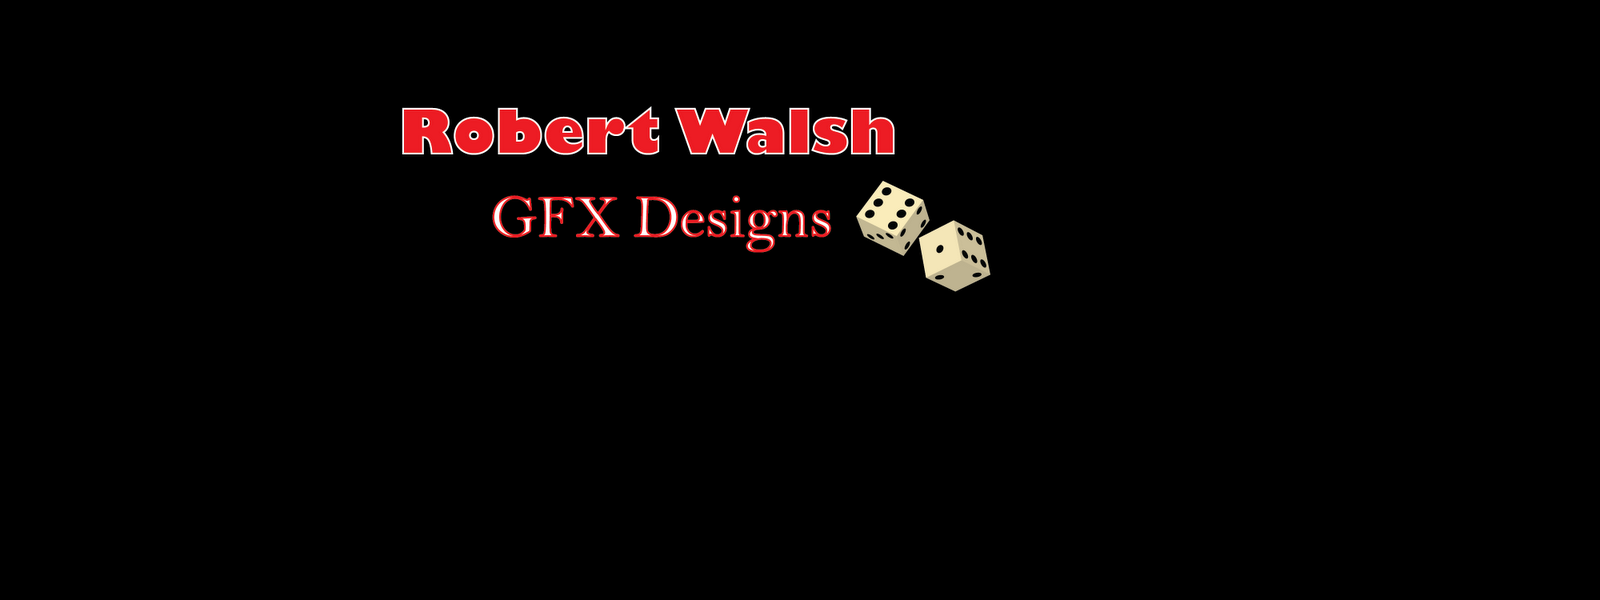 Robert Walsh GFX